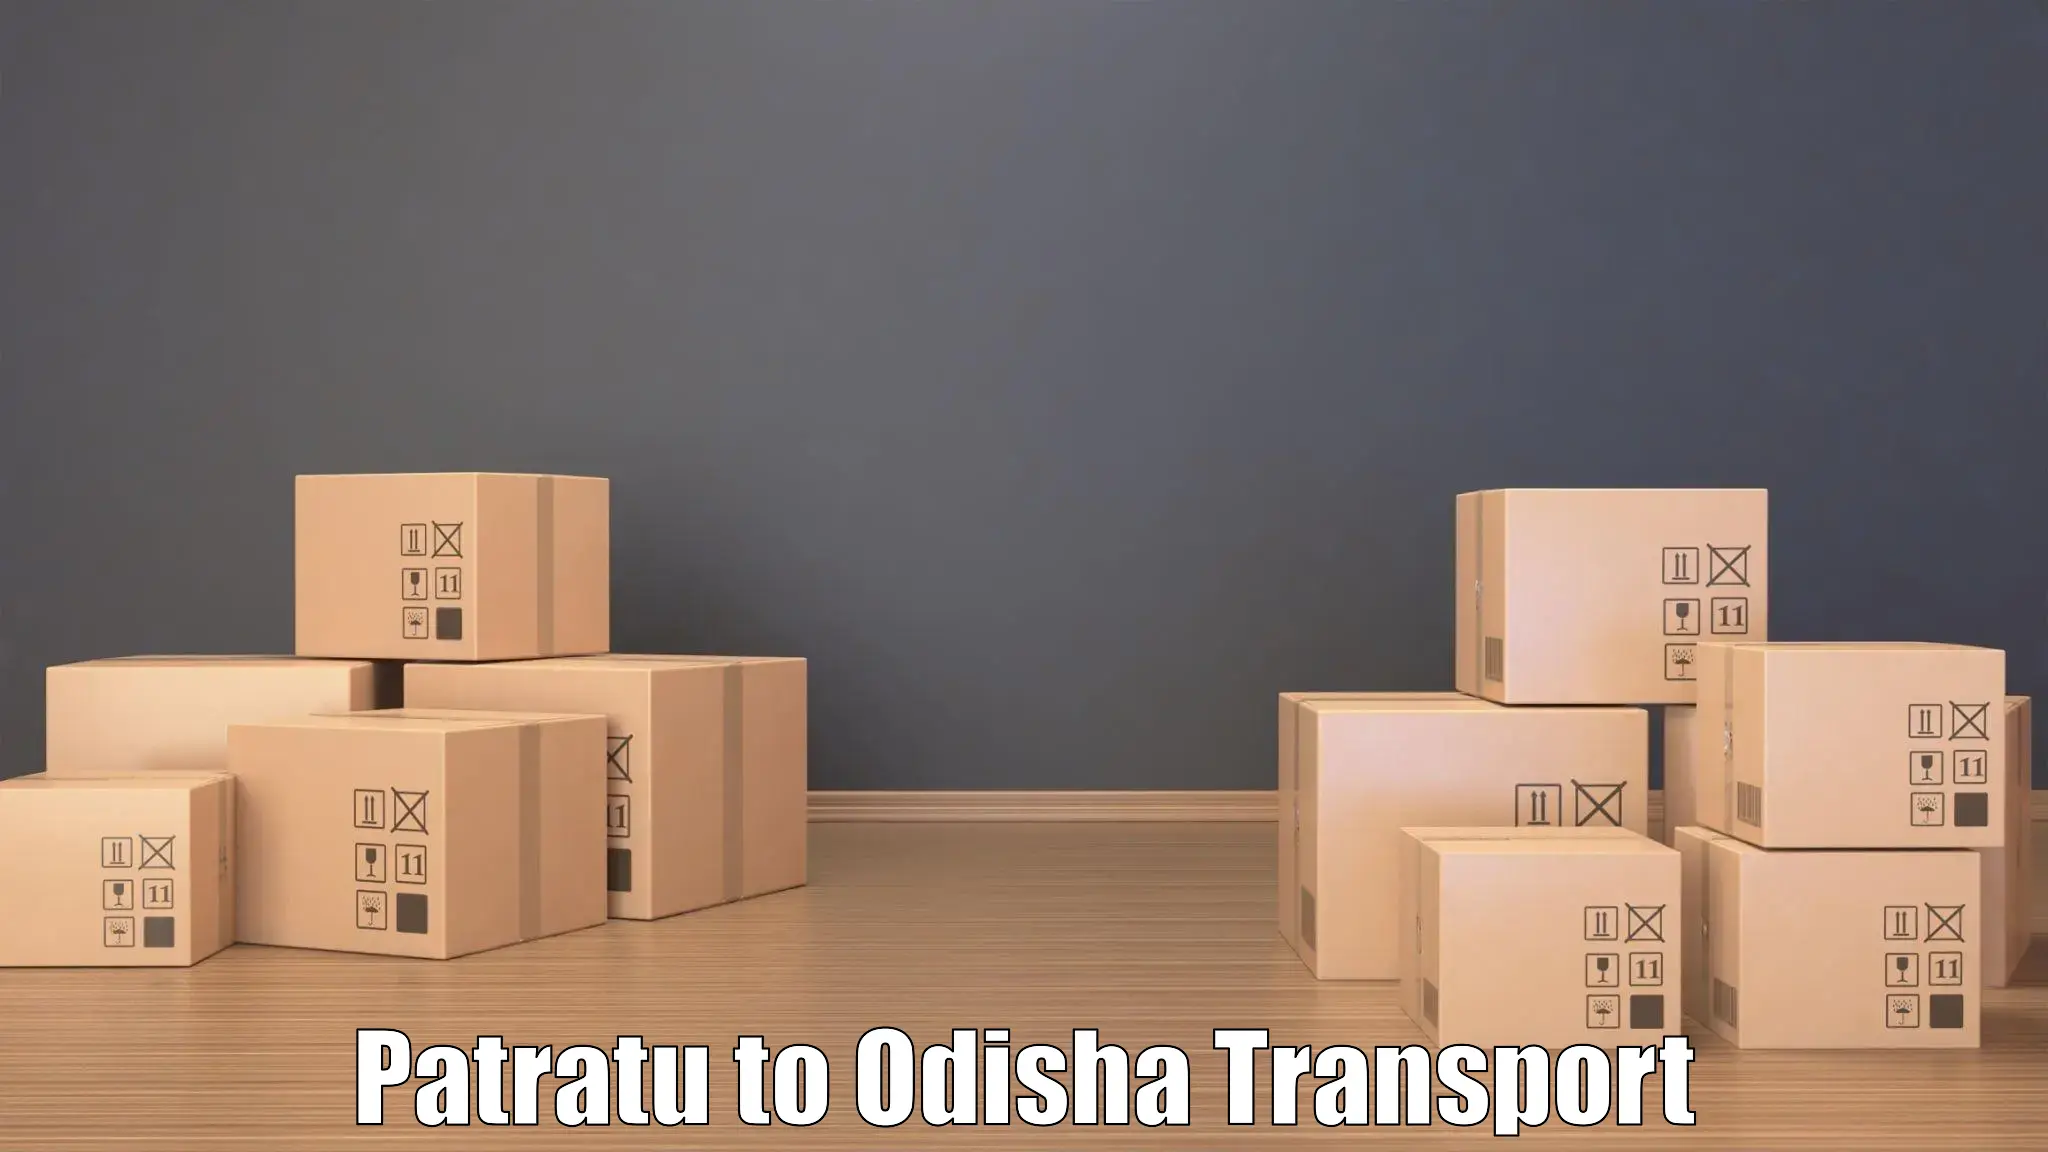 Best transport services in India Patratu to Dandisahi